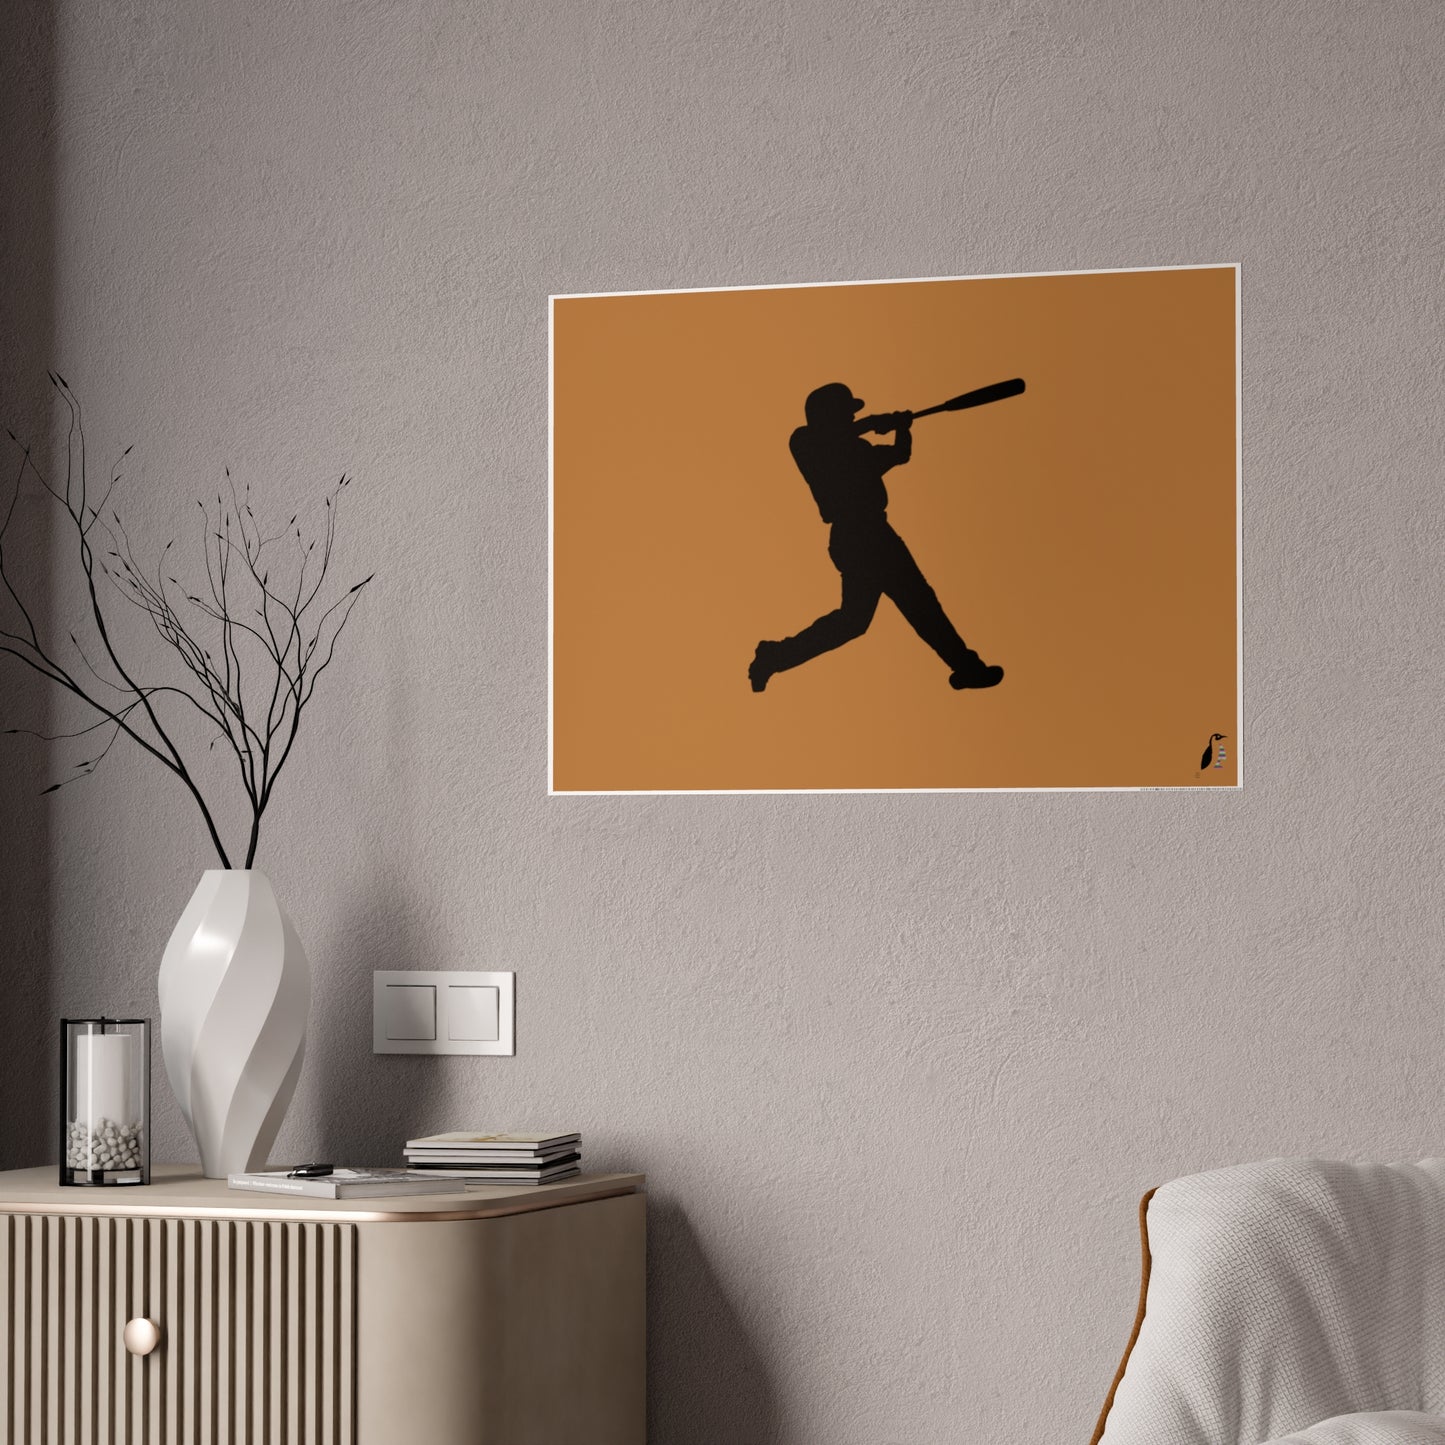 Gloss Posters: Baseball Lite Brown